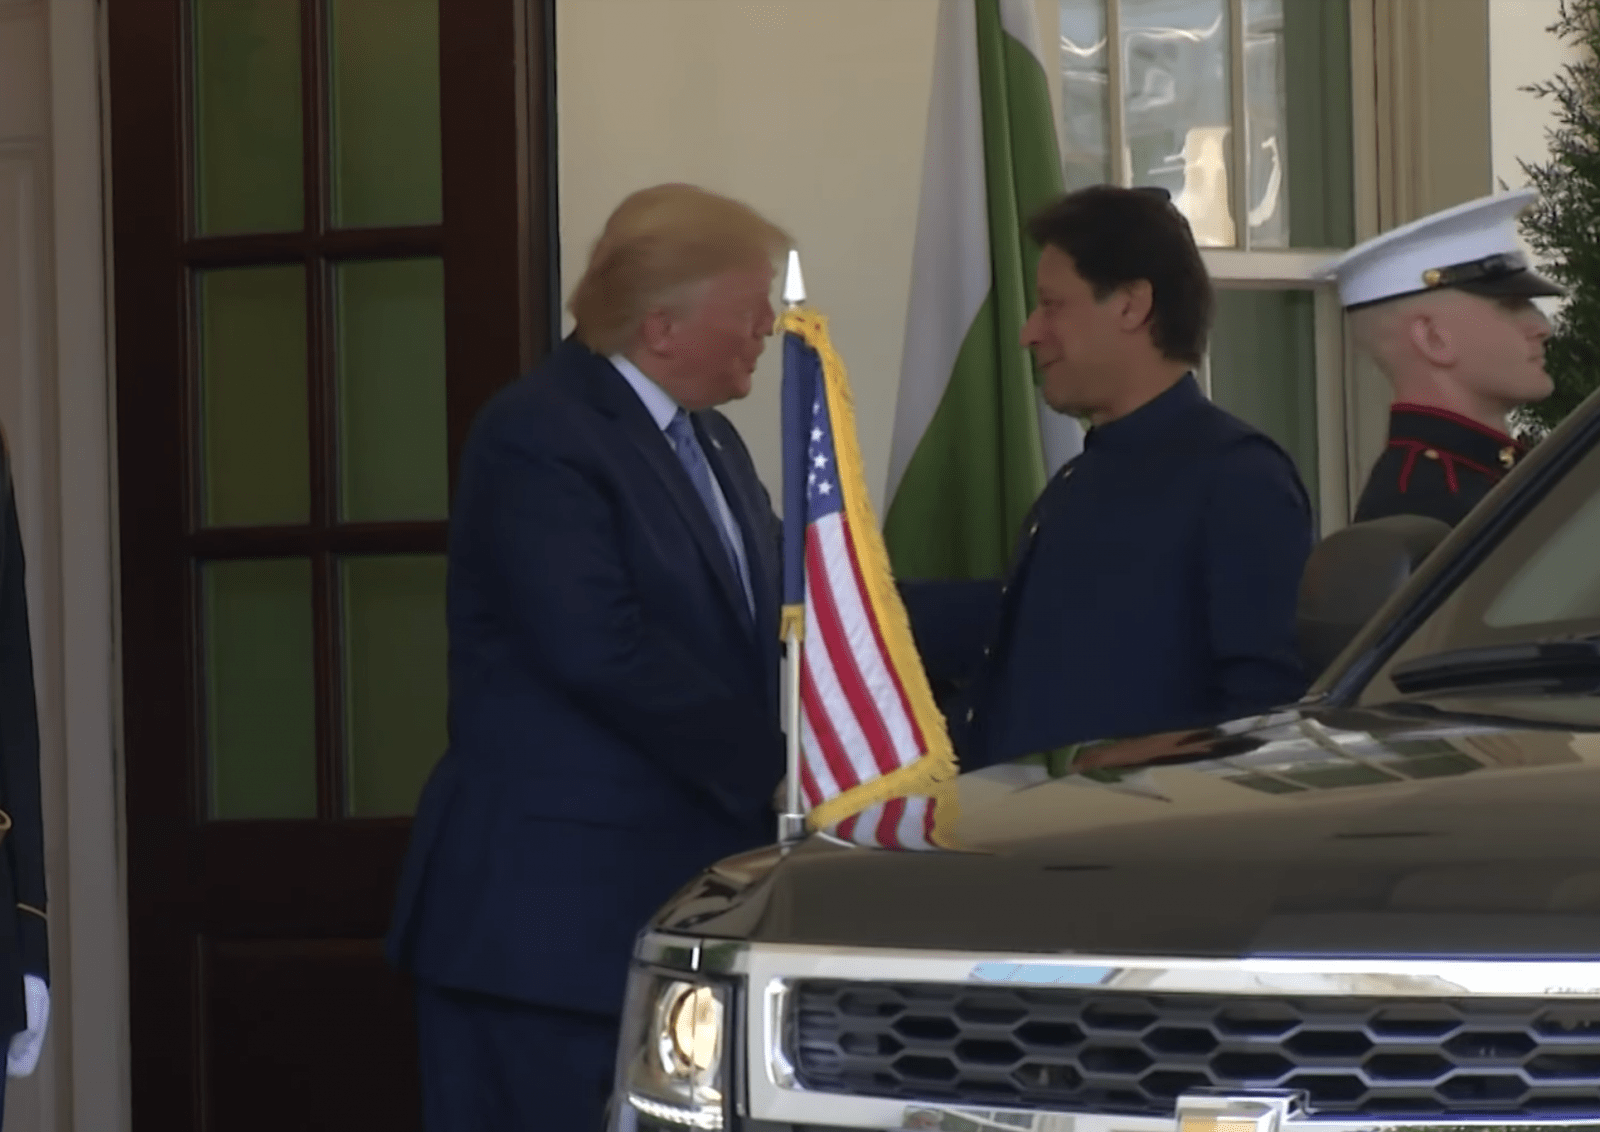 New Episode in Pak-U.S. Relations